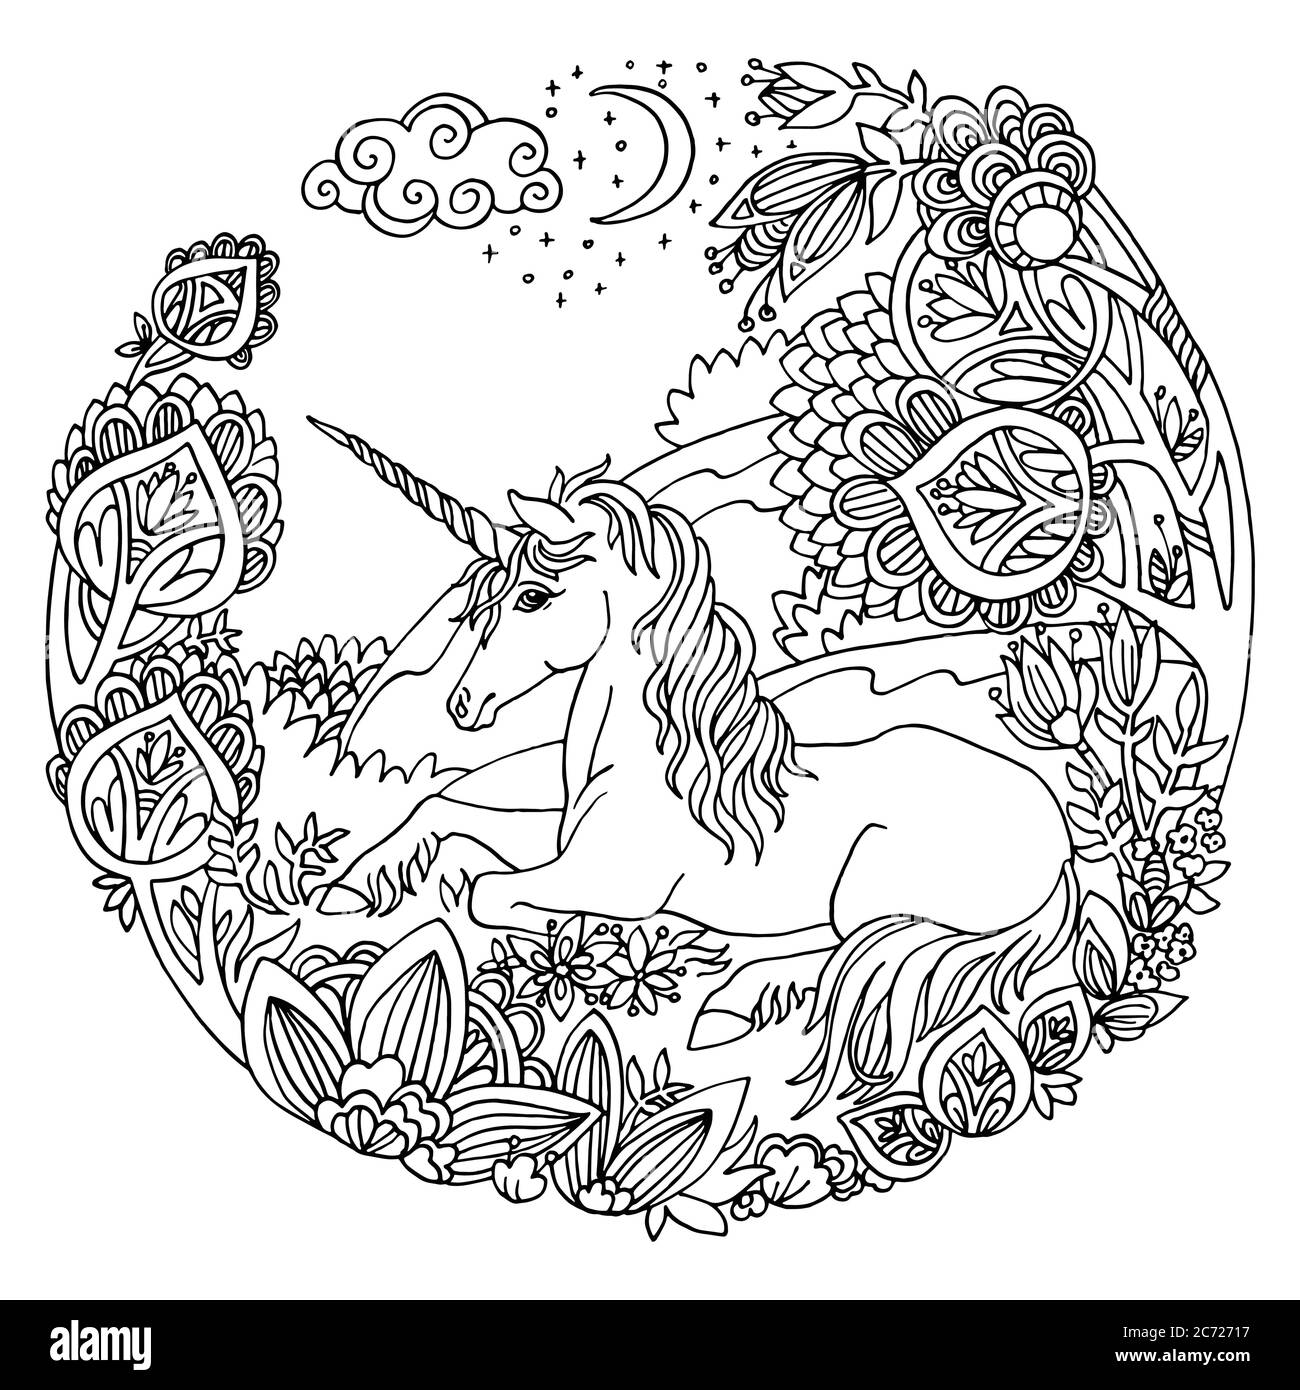 Vettore colorazione magica unicorno in alberi, fiori in cerchio composizione.Antistress disegno a mano libera con groviglio,elementi doodle.per la colorazione di adulti Illustrazione Vettoriale